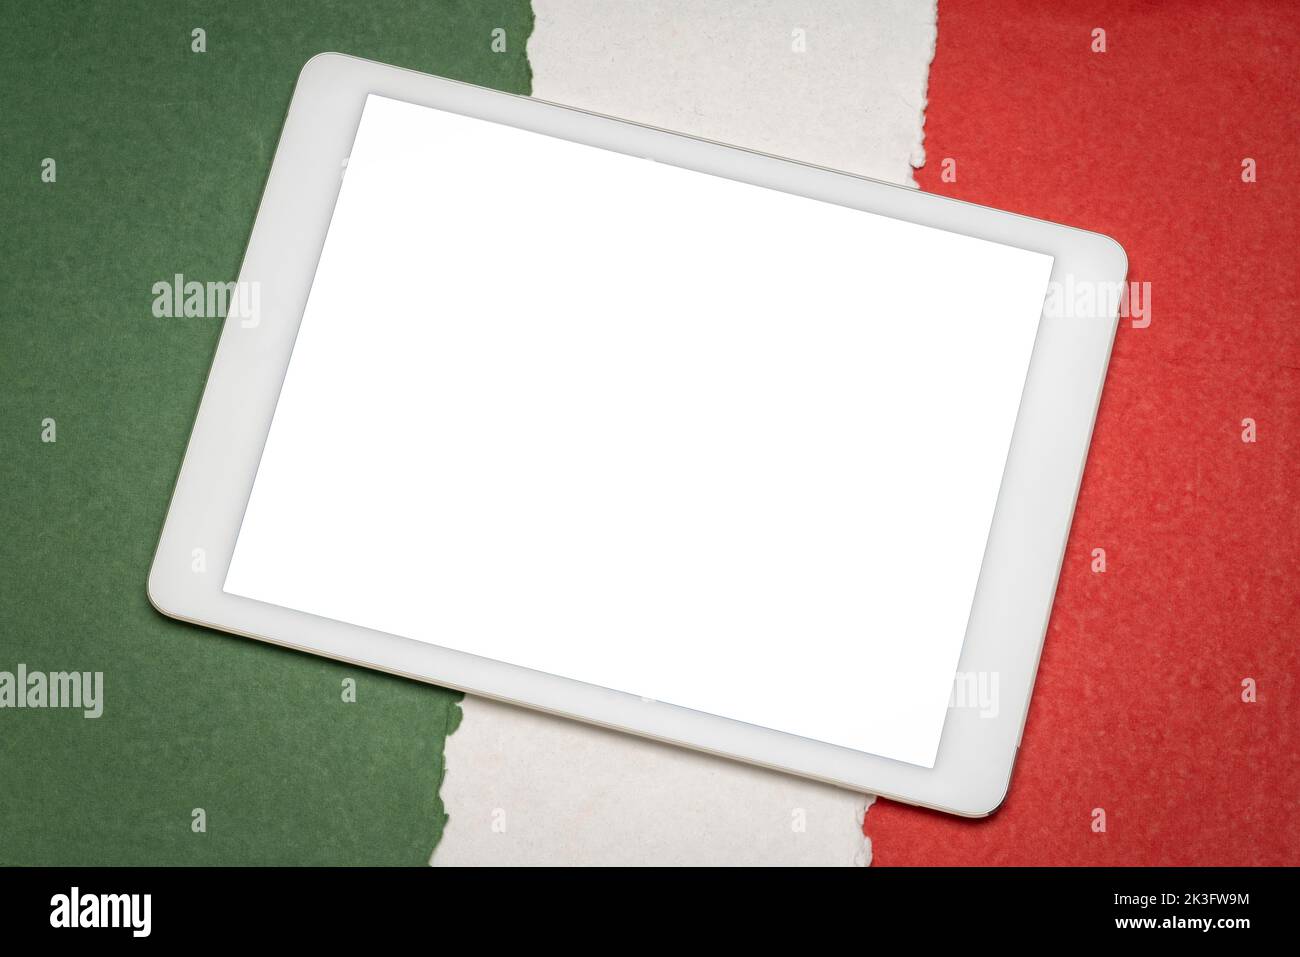 maquette de tablette numérique avec un écran vierge isolé (masque inclus) contre papier résumé en couleurs de drapeau national italien, vert, blanc a Banque D'Images